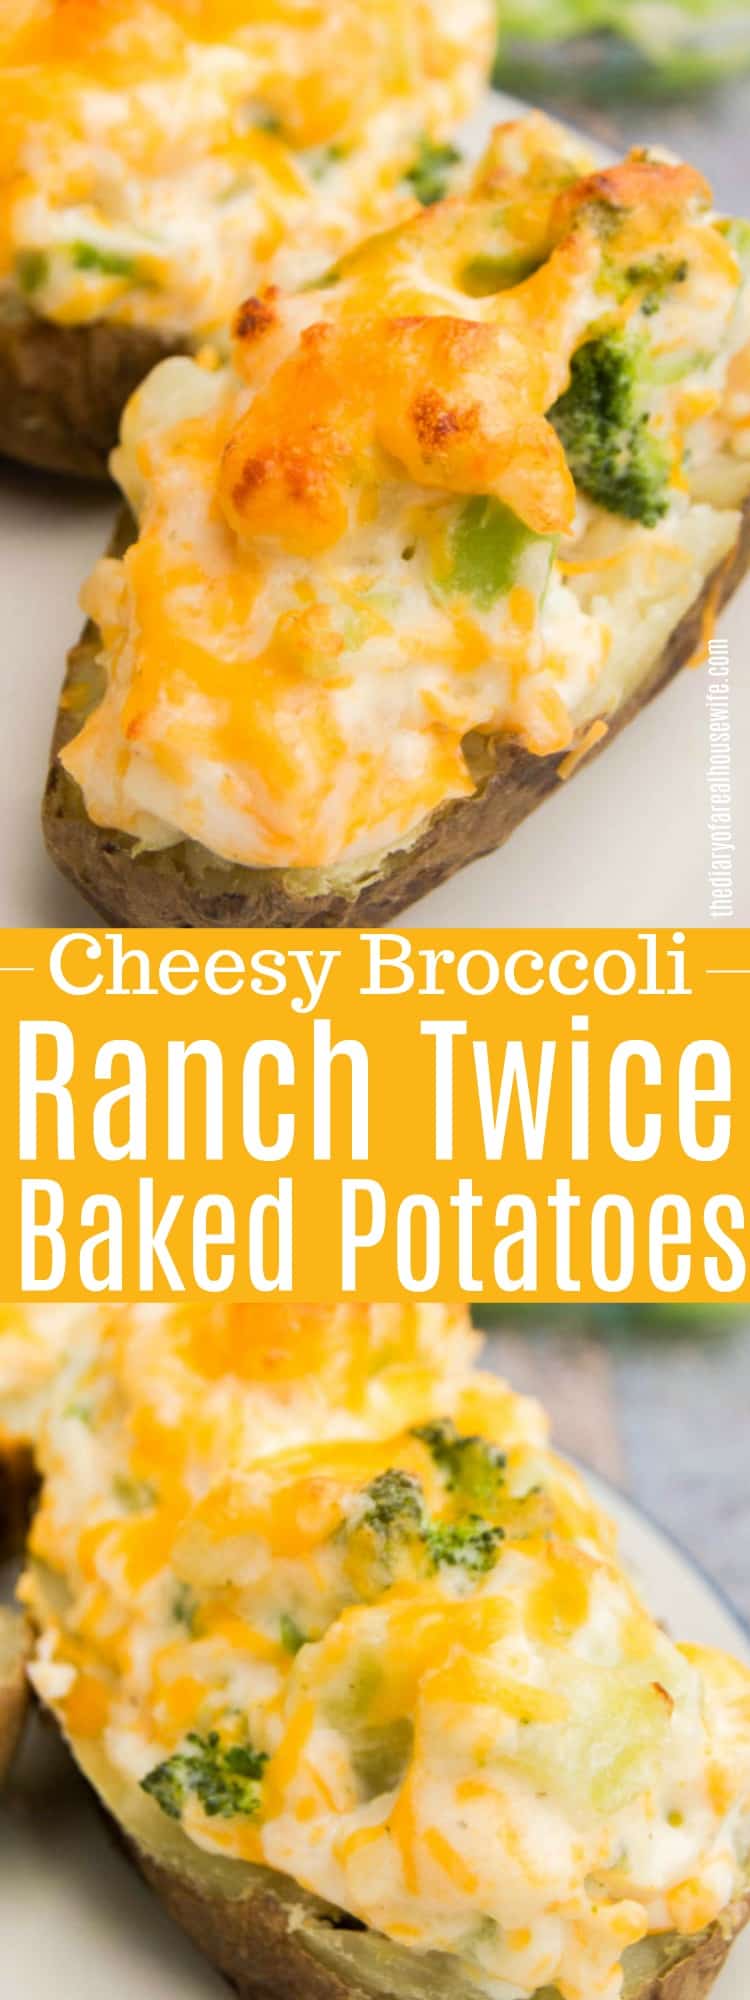 Cheesy Broccoli Ranch Twice Baked Potatoes